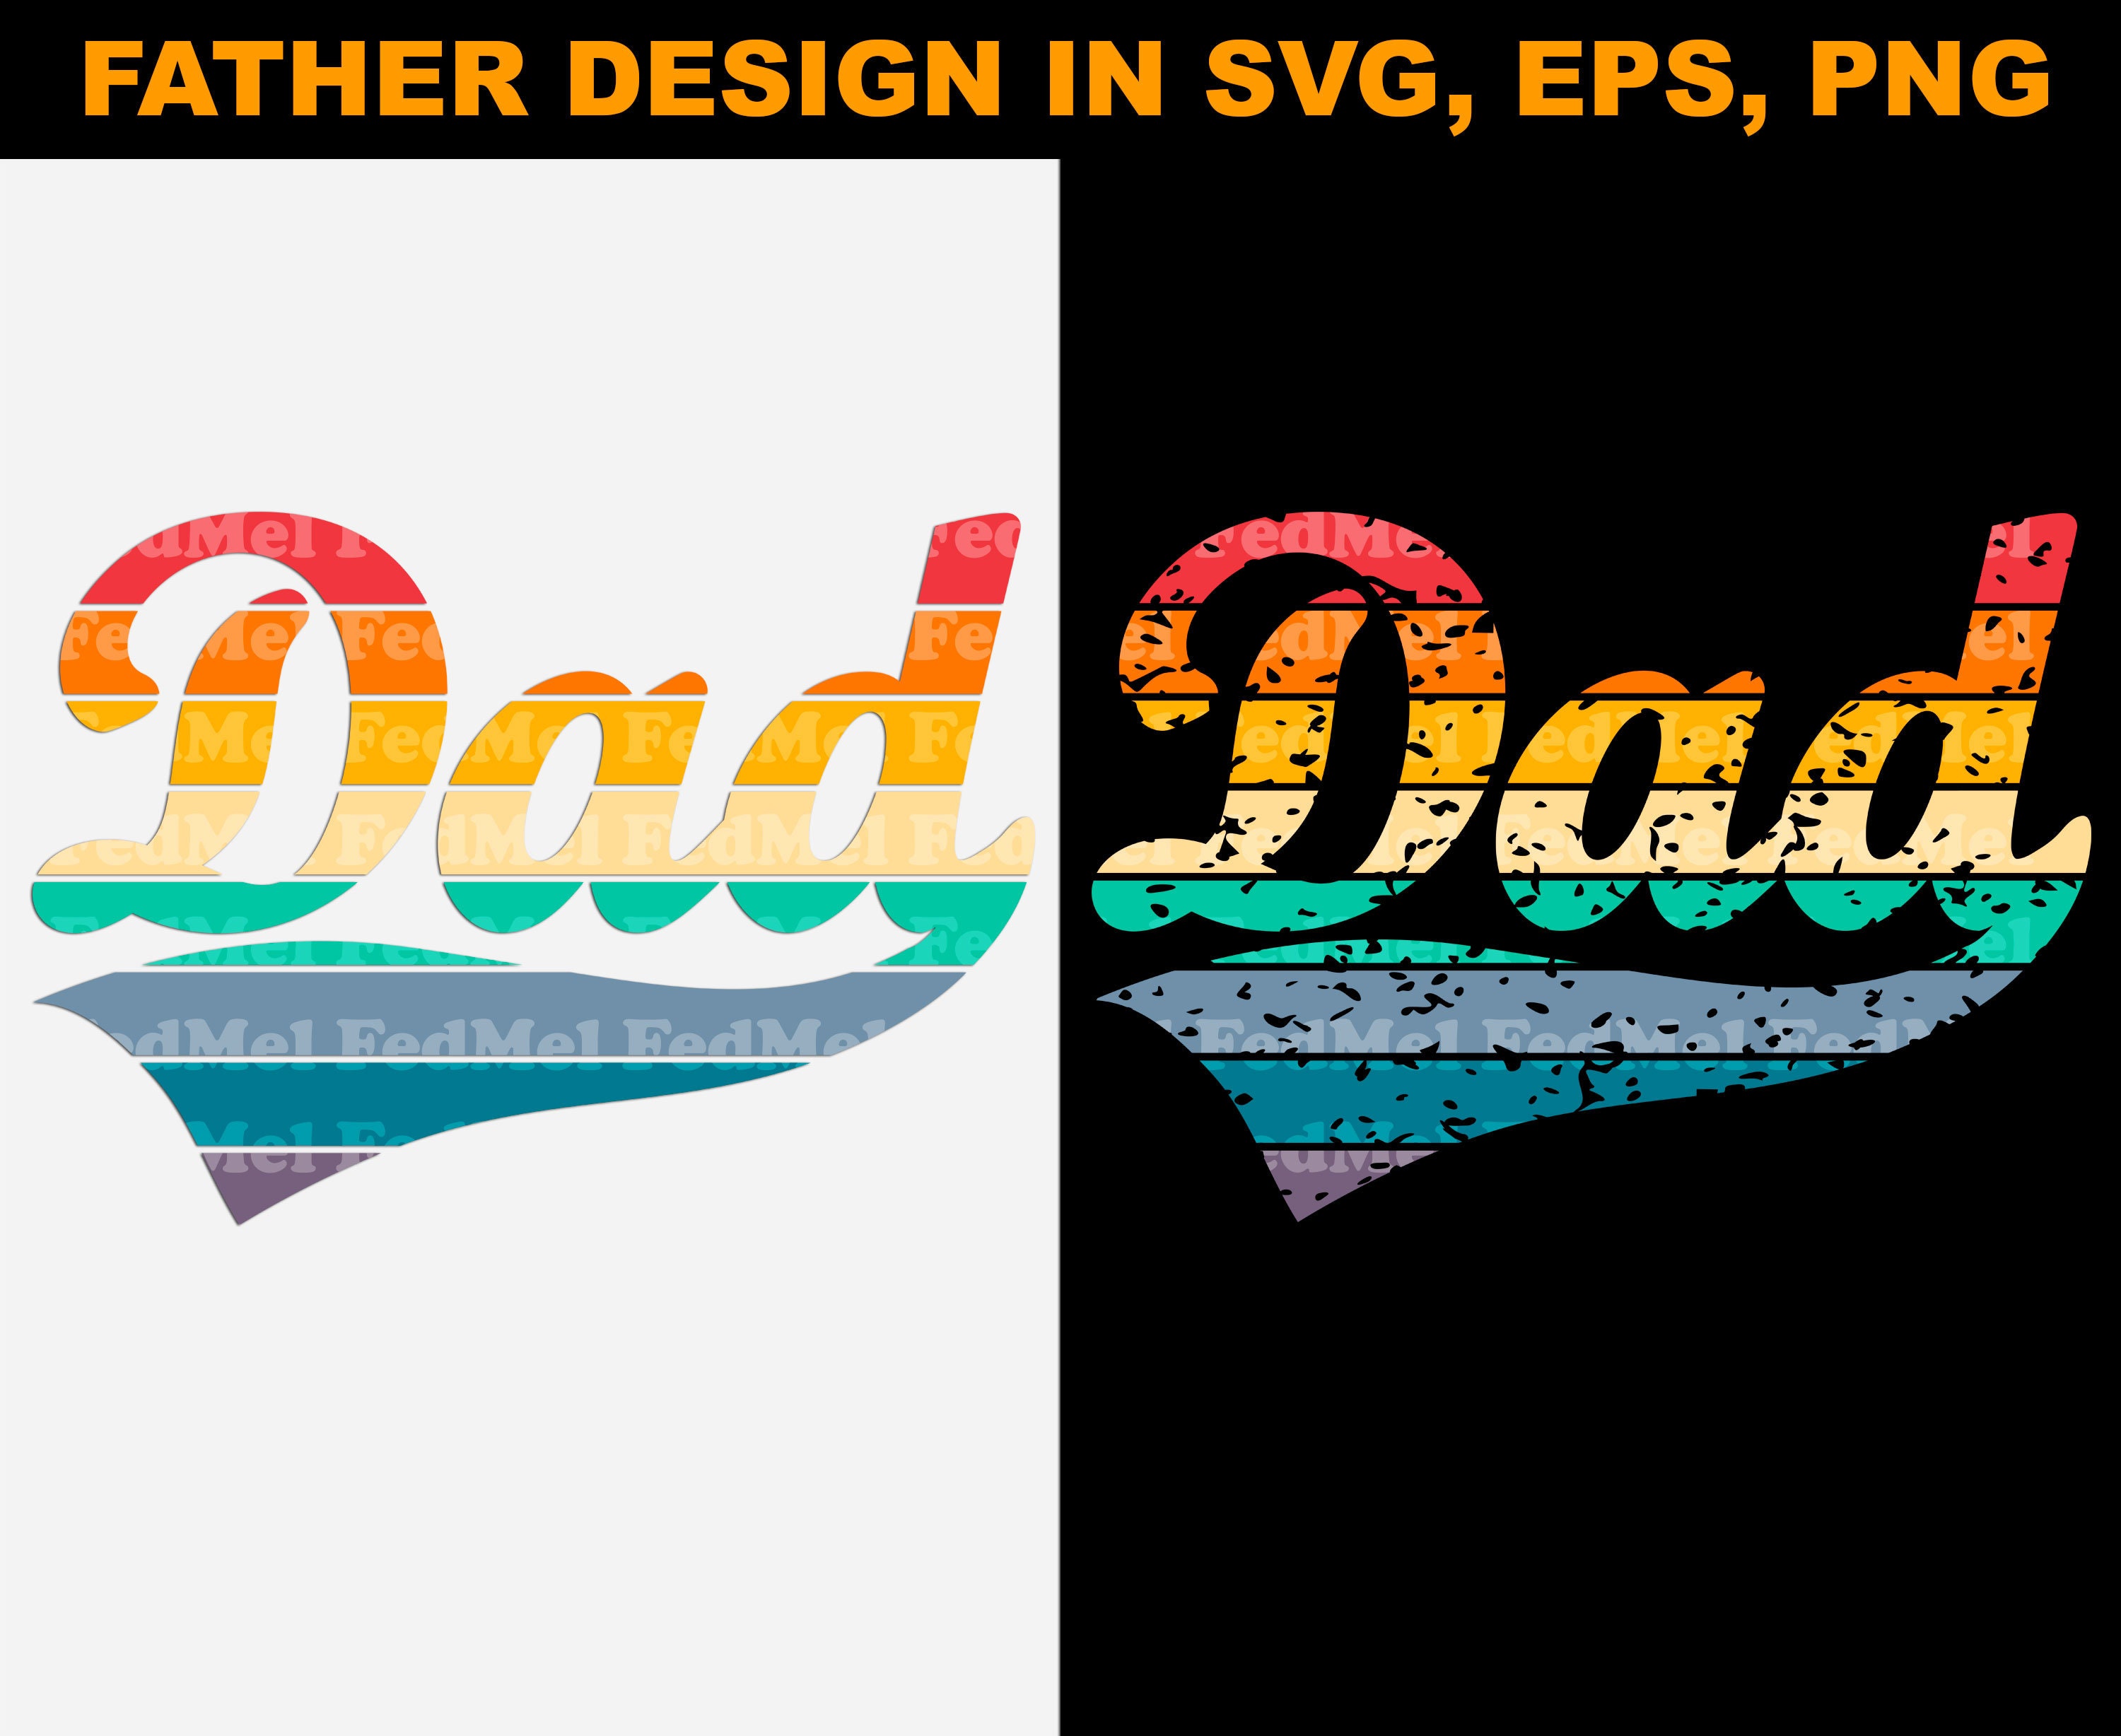 Dad design in svg png eps formats | Etsy